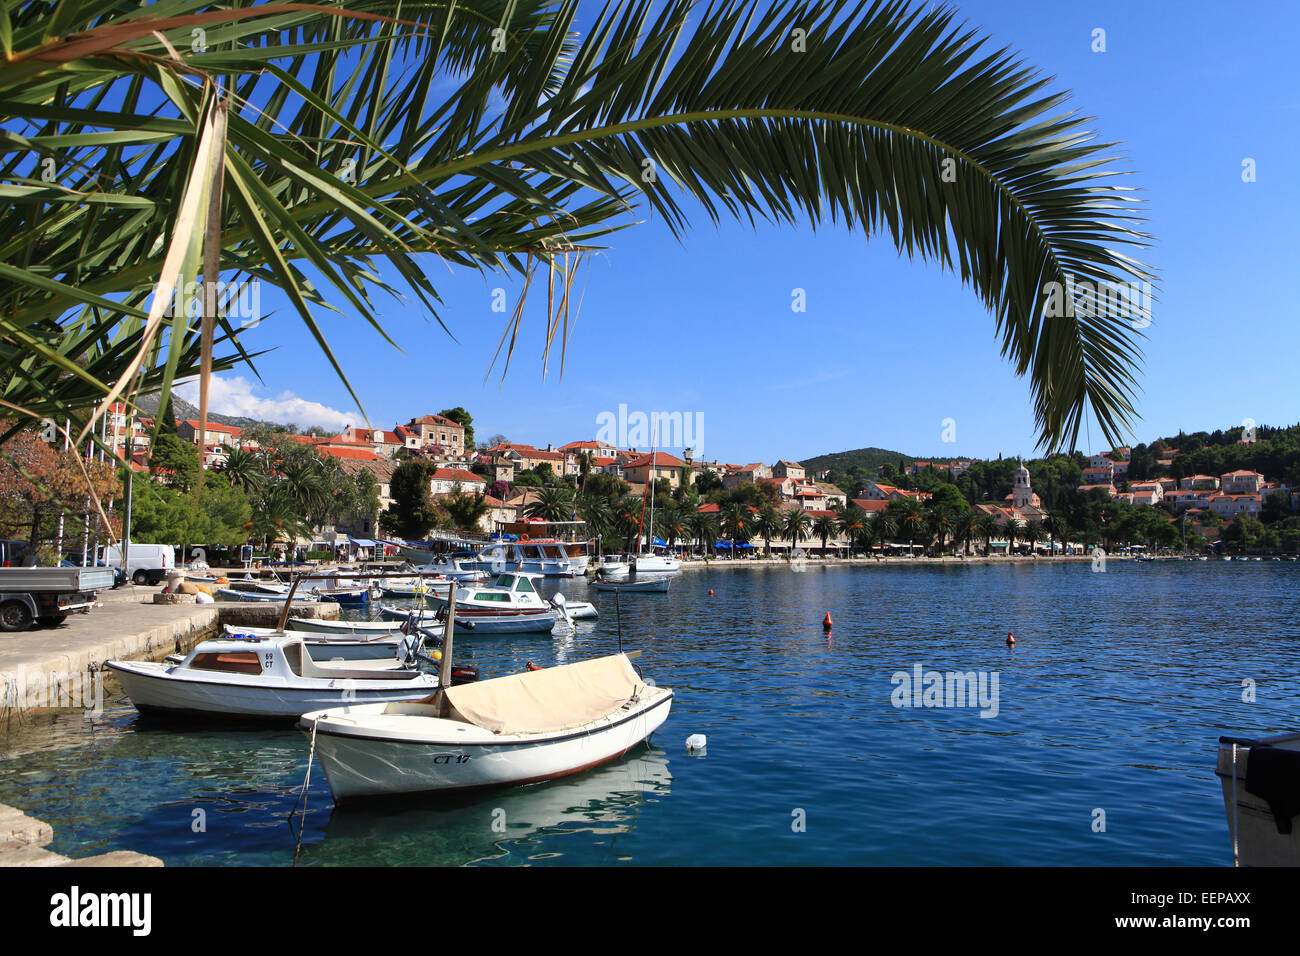 Cavtat, Croatie port, avec des bateaux dans le port et les yachts sur la mer Adreatic ; Europe centrale et de la Méditerranée. Banque D'Images